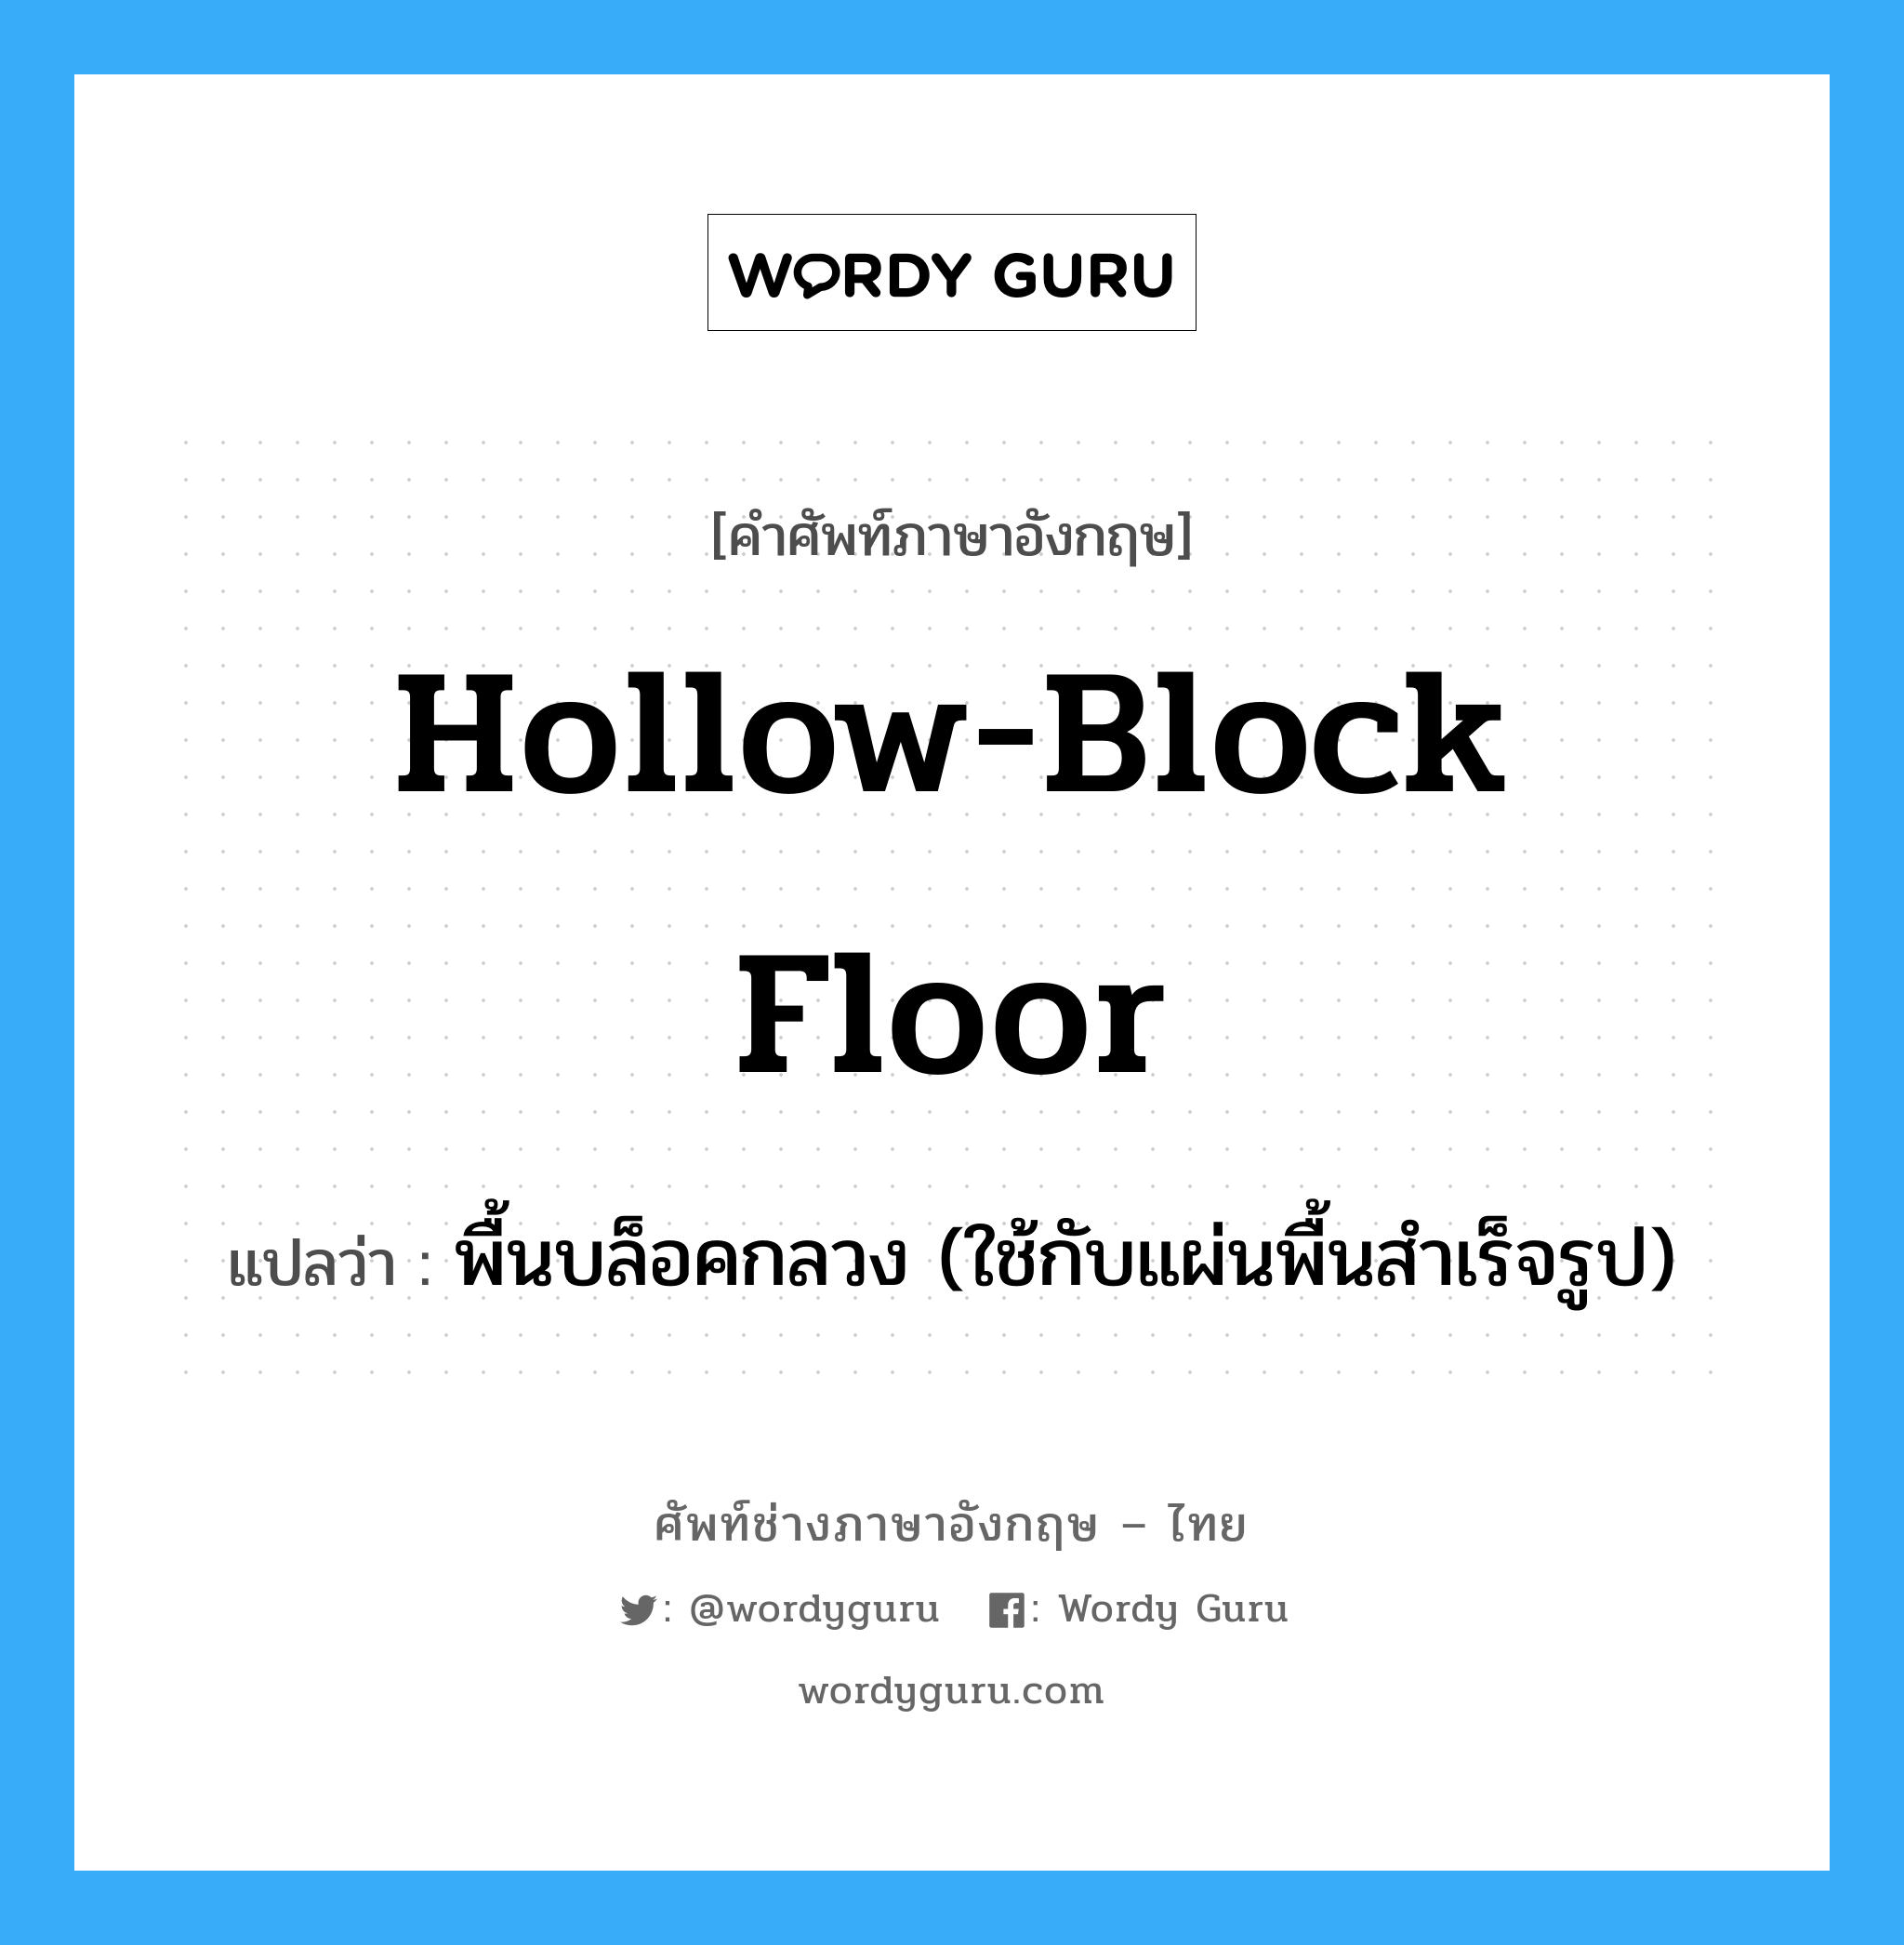 hollow-block floor แปลว่า?, คำศัพท์ช่างภาษาอังกฤษ - ไทย hollow-block floor คำศัพท์ภาษาอังกฤษ hollow-block floor แปลว่า พื้นบล็อคกลวง (ใช้กับแผ่นพื้นสำเร็จรูป)